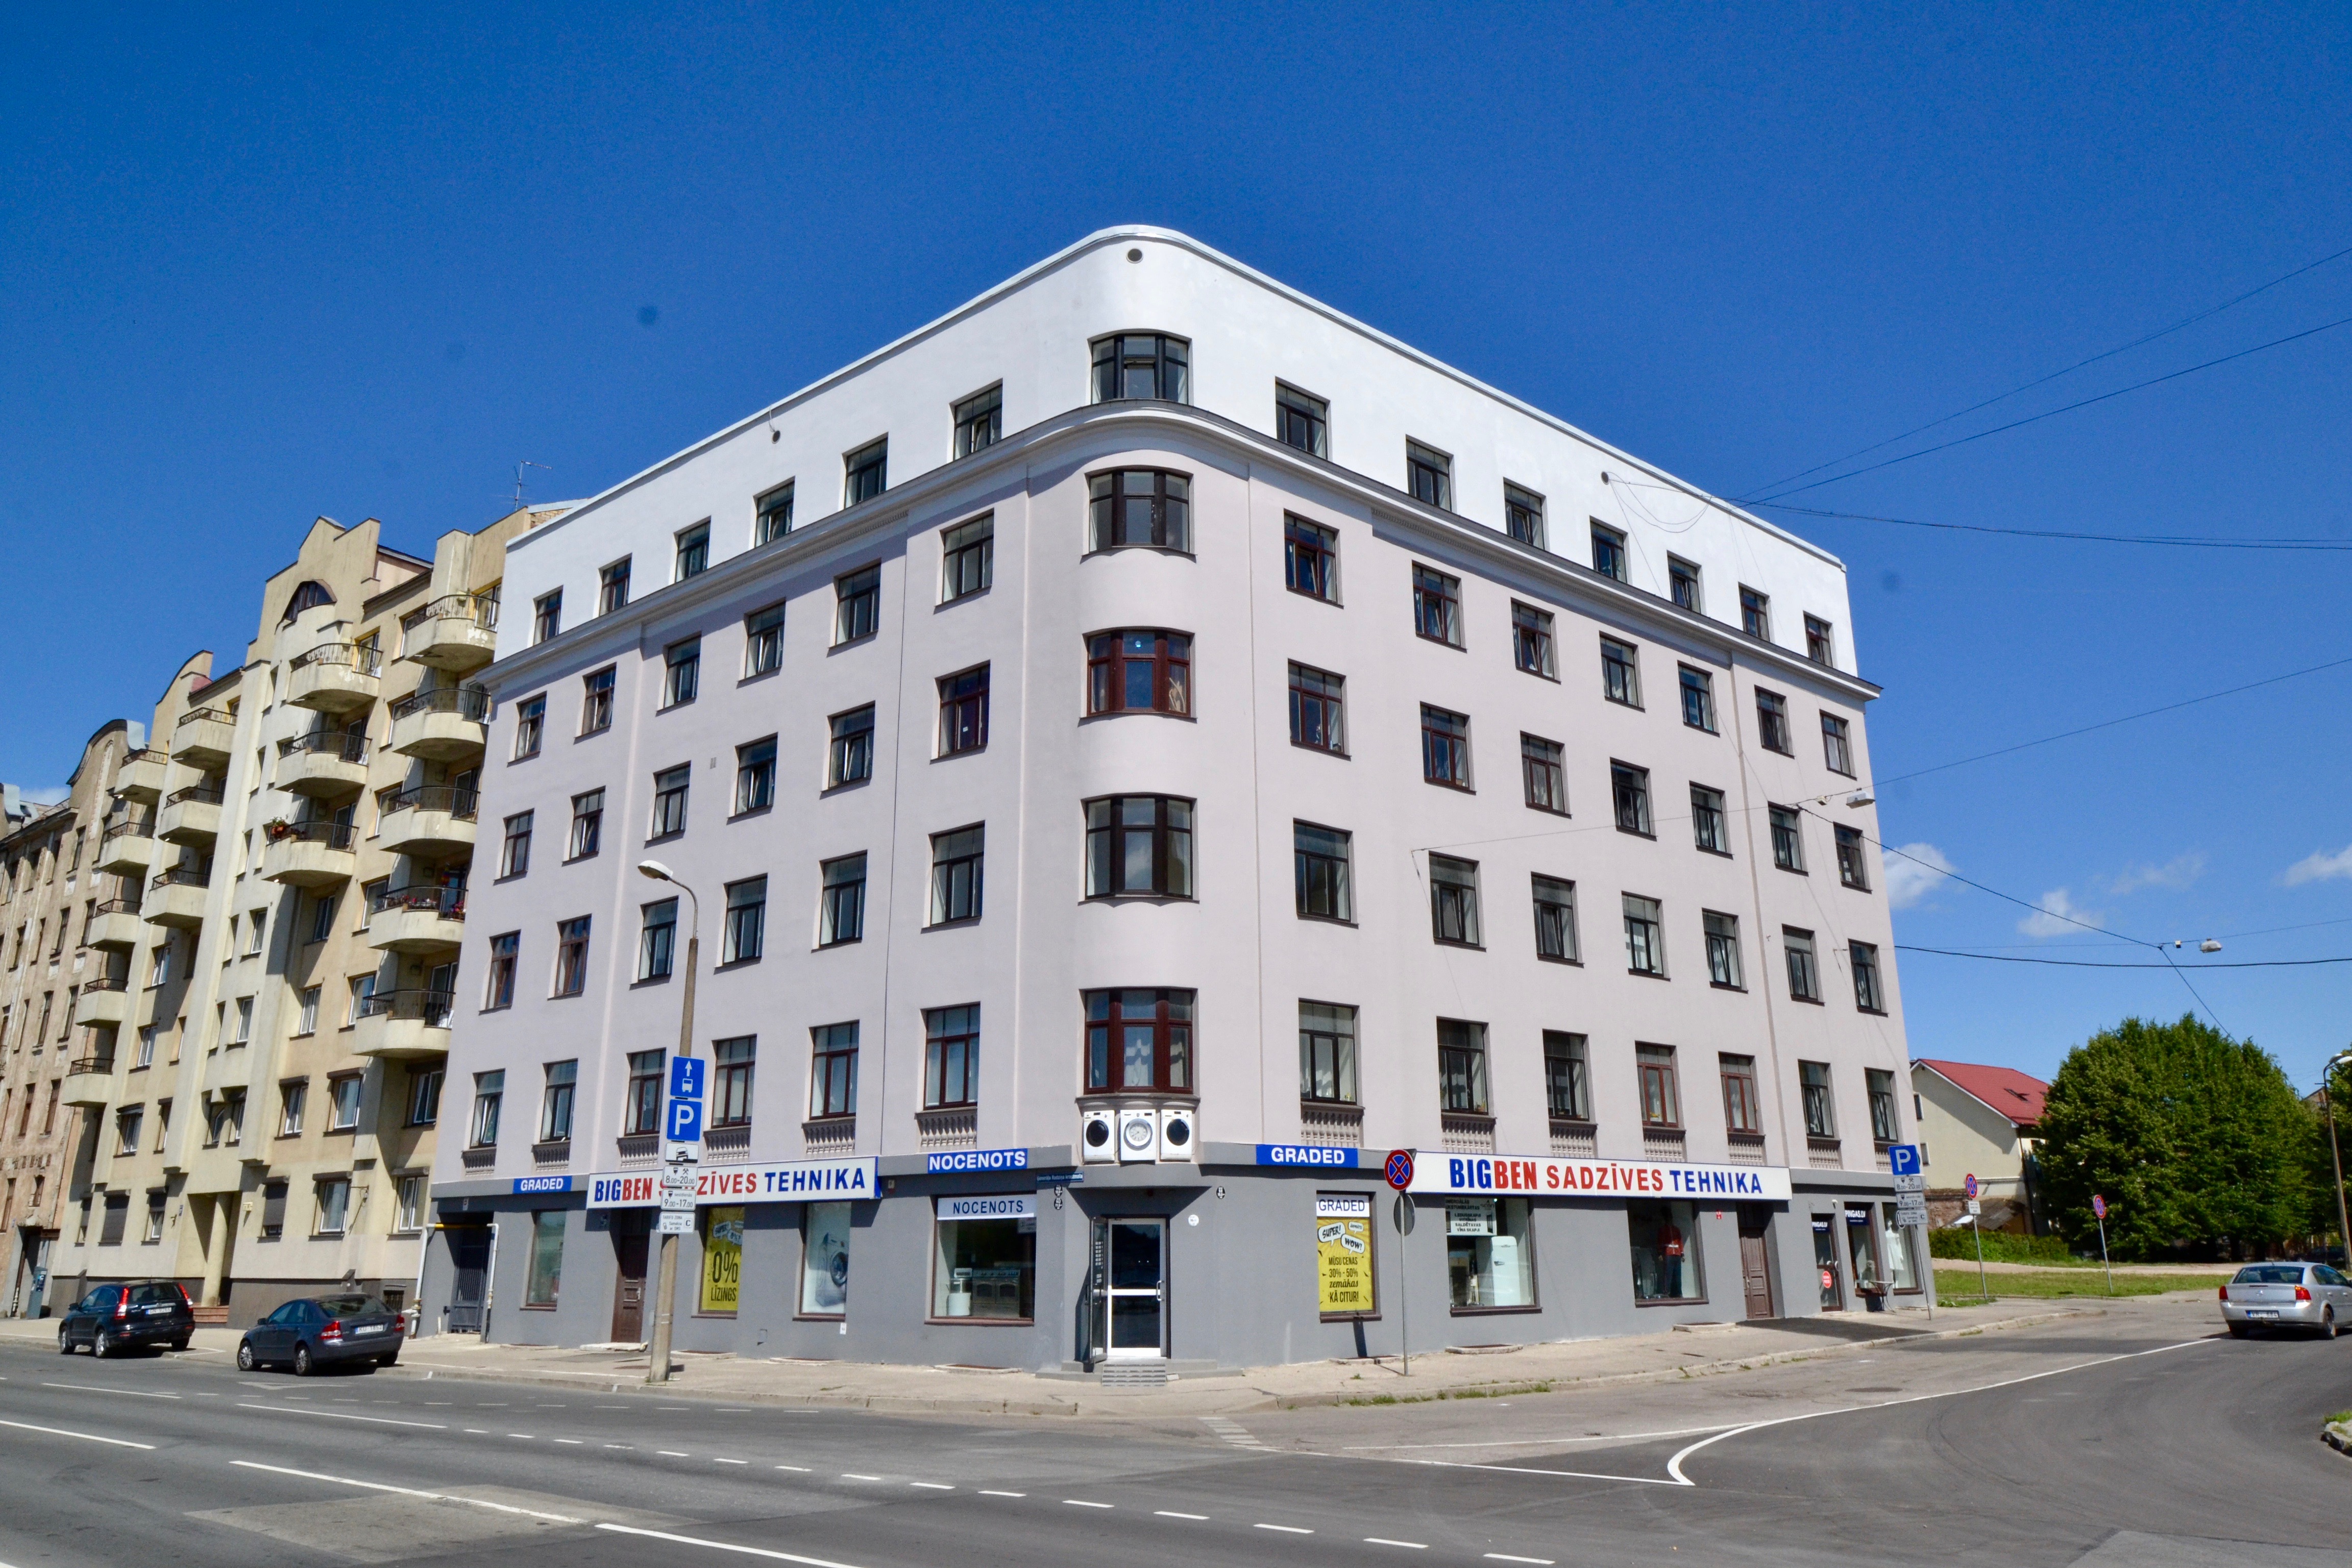 ARCO REAL ESTATE sāk dzīvokļu pārdošanu renovētā namīpašumā ar skatu uz Daugavu - Nekustamo īpašumu ziņas - City24.lv nekustamo īpašumu sludinājumu portāls